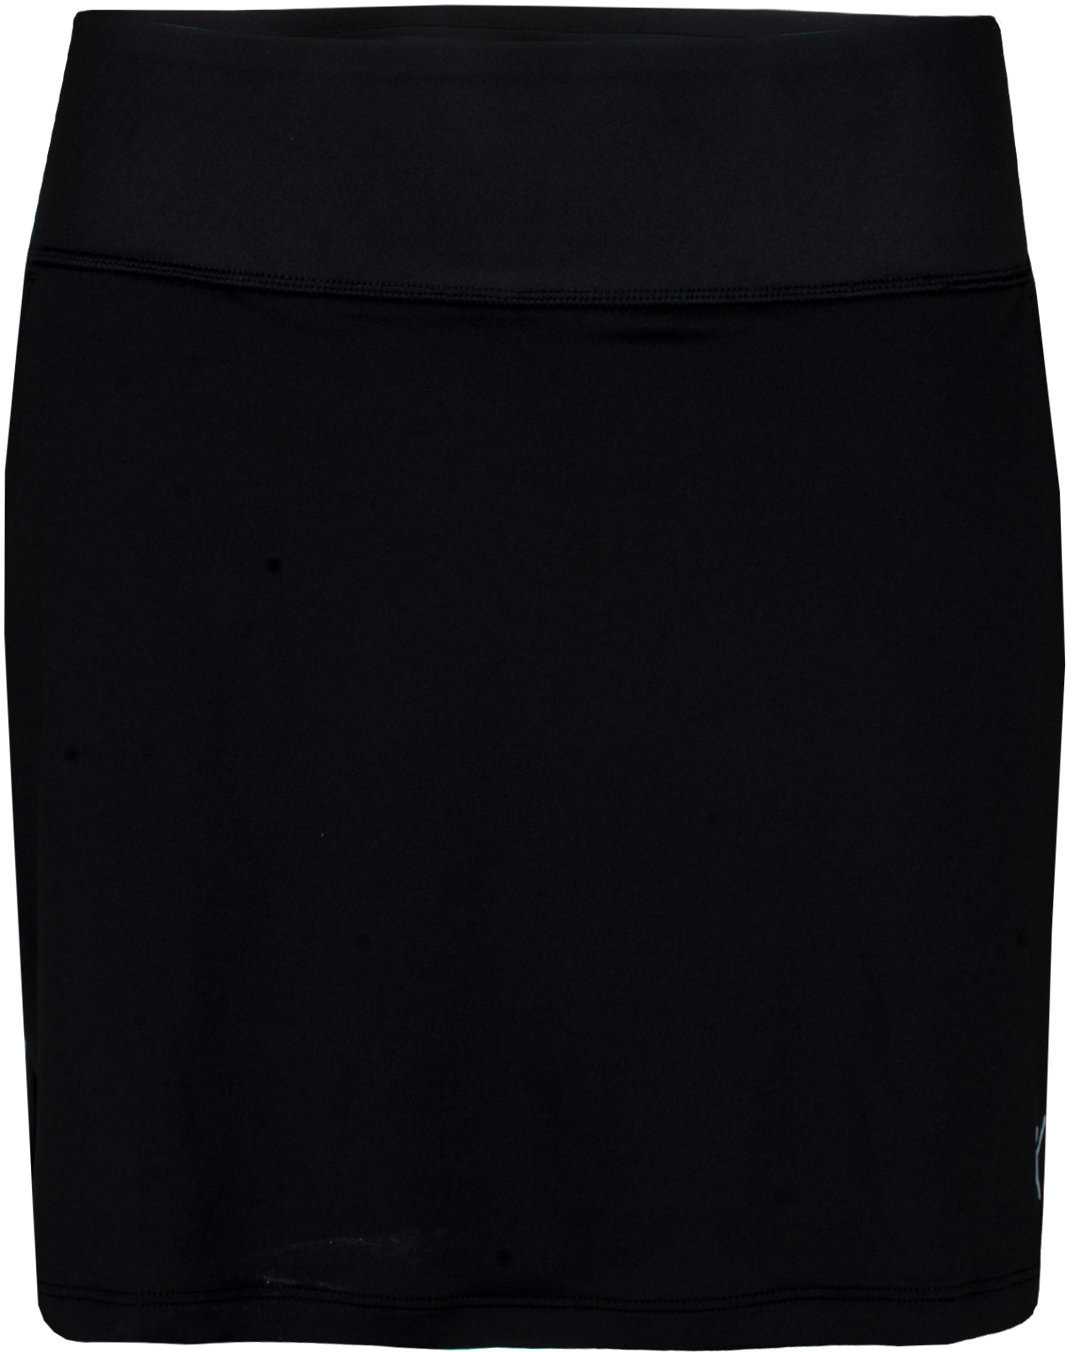 Suknja i haljina Puma PWRSHAPE Solid Knit Womens Skirt Black XS